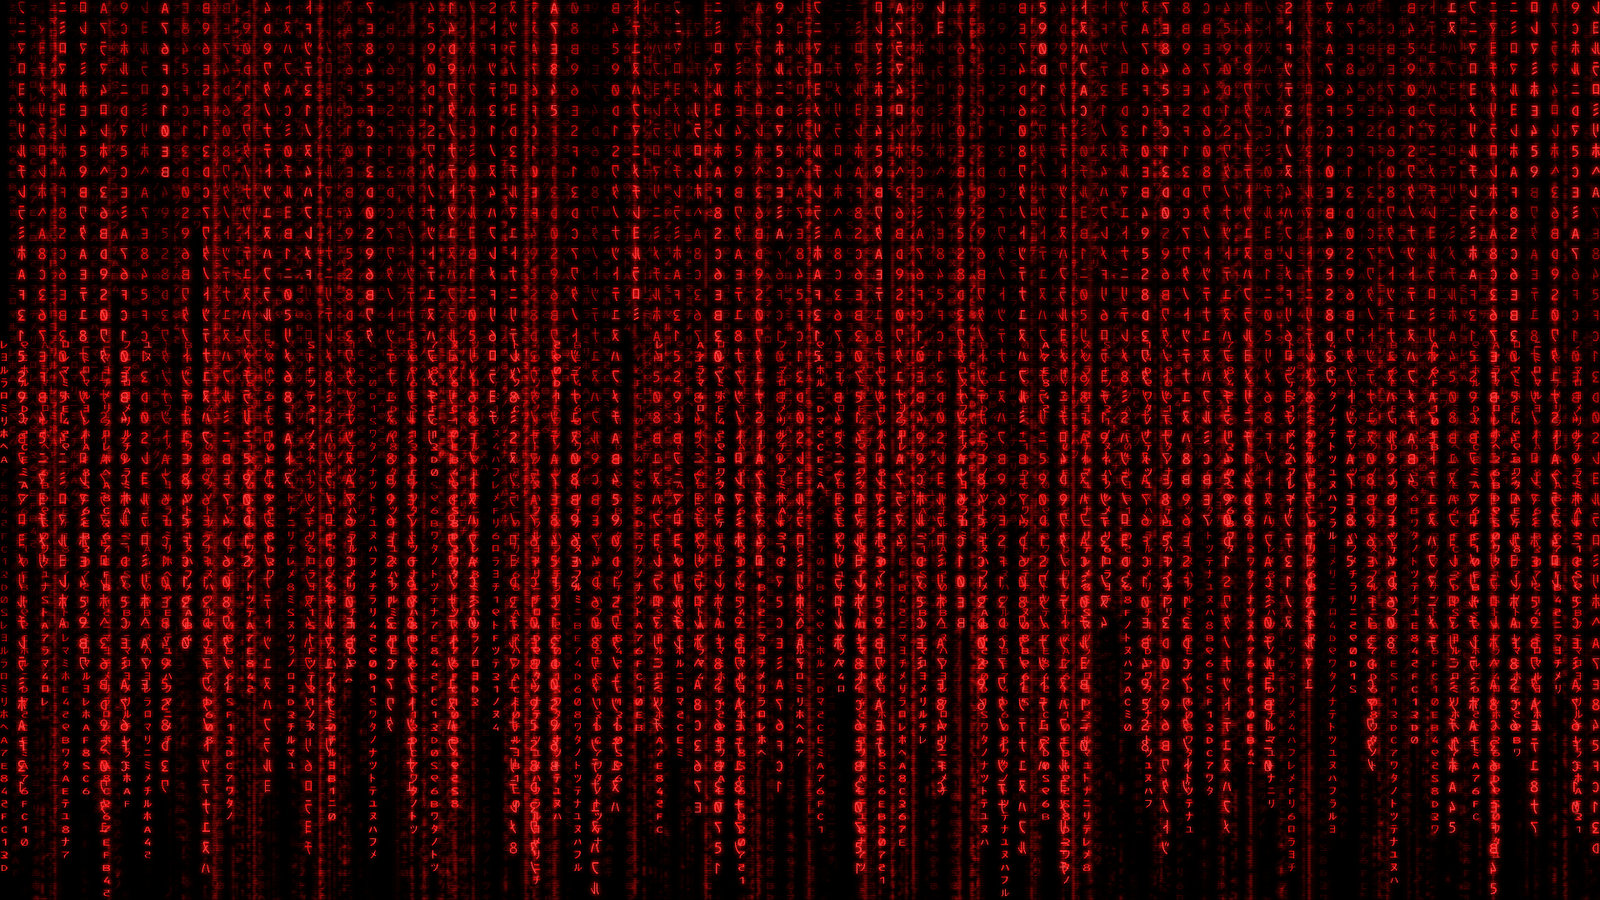 Matrix Wallpaper: Bạn là fan của bộ phim ma trận nổi tiếng? Hãy xem hình nền Matrix để ngập tràn trong không gian kỳ ảo được thể hiện qua những đường viền vuông vắn và gam màu đen trắng. Bộ hình nền này sẽ đưa bạn vào một thế giới máy tính hiện đại và bí ẩn hấp dẫn.